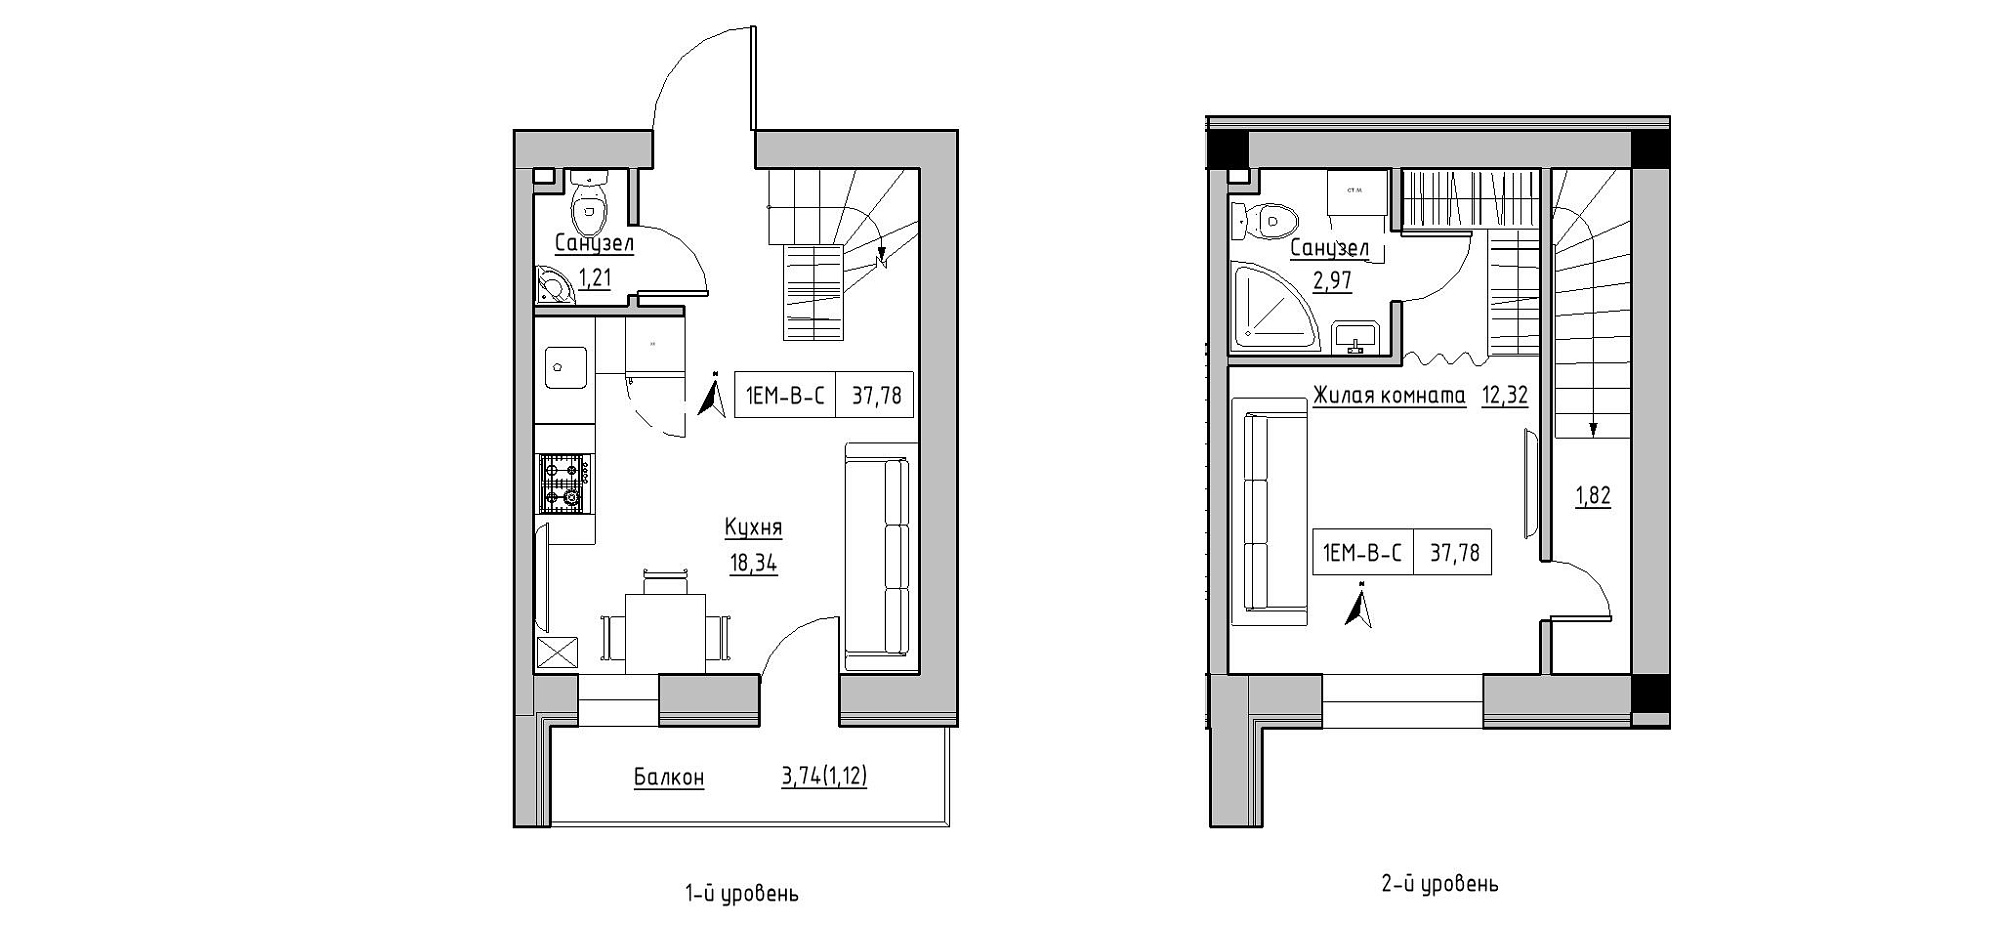 Planning 2-lvl flats area 37.78m2, KS-020-05/0005.